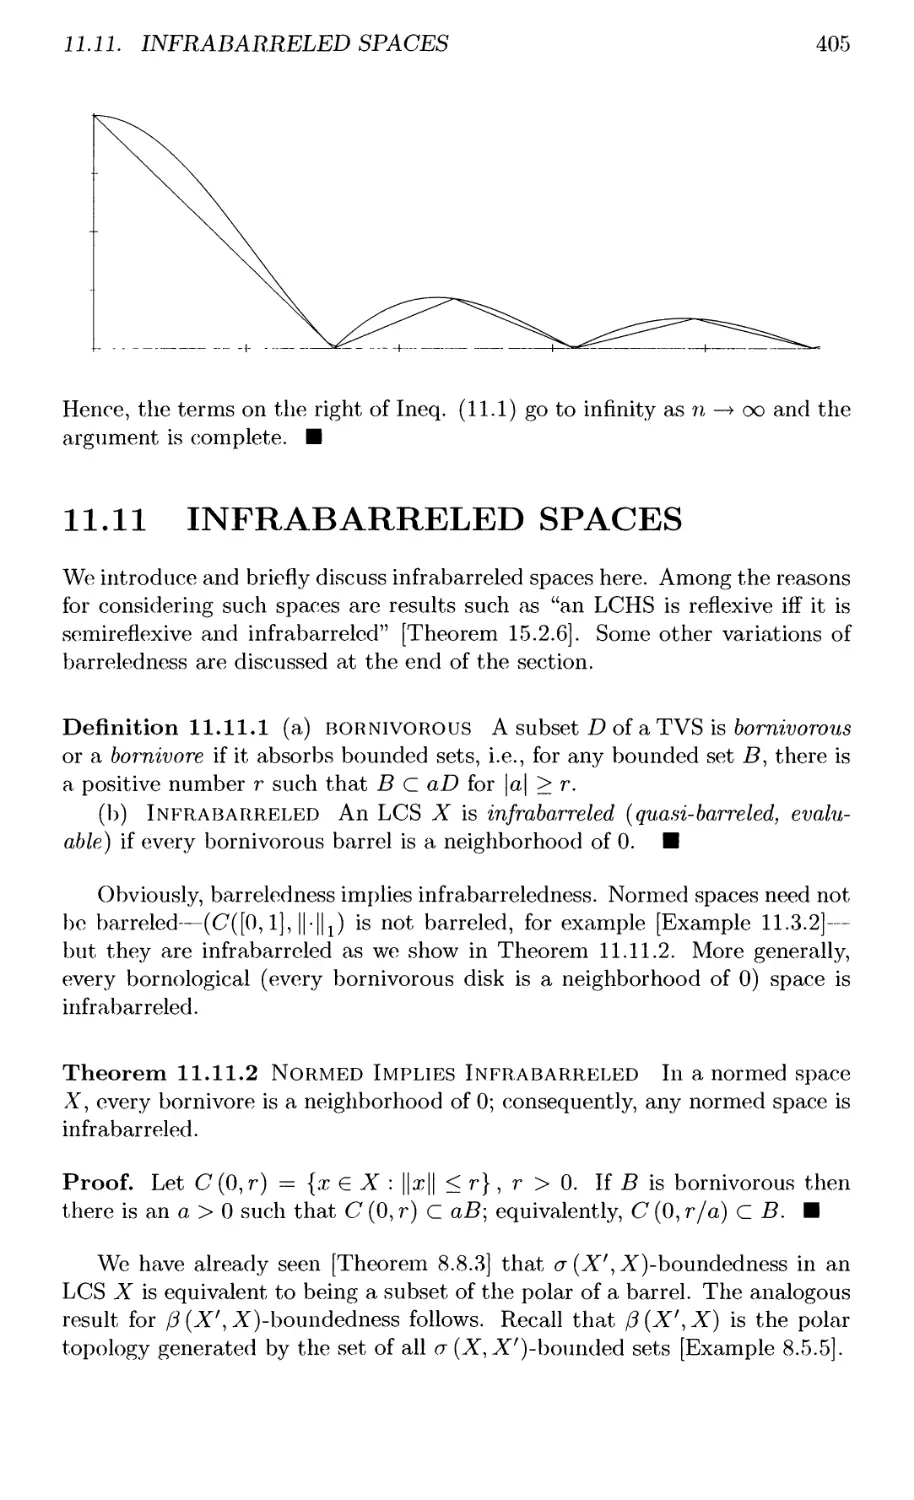 11.11 INFRABARRELED SPACES